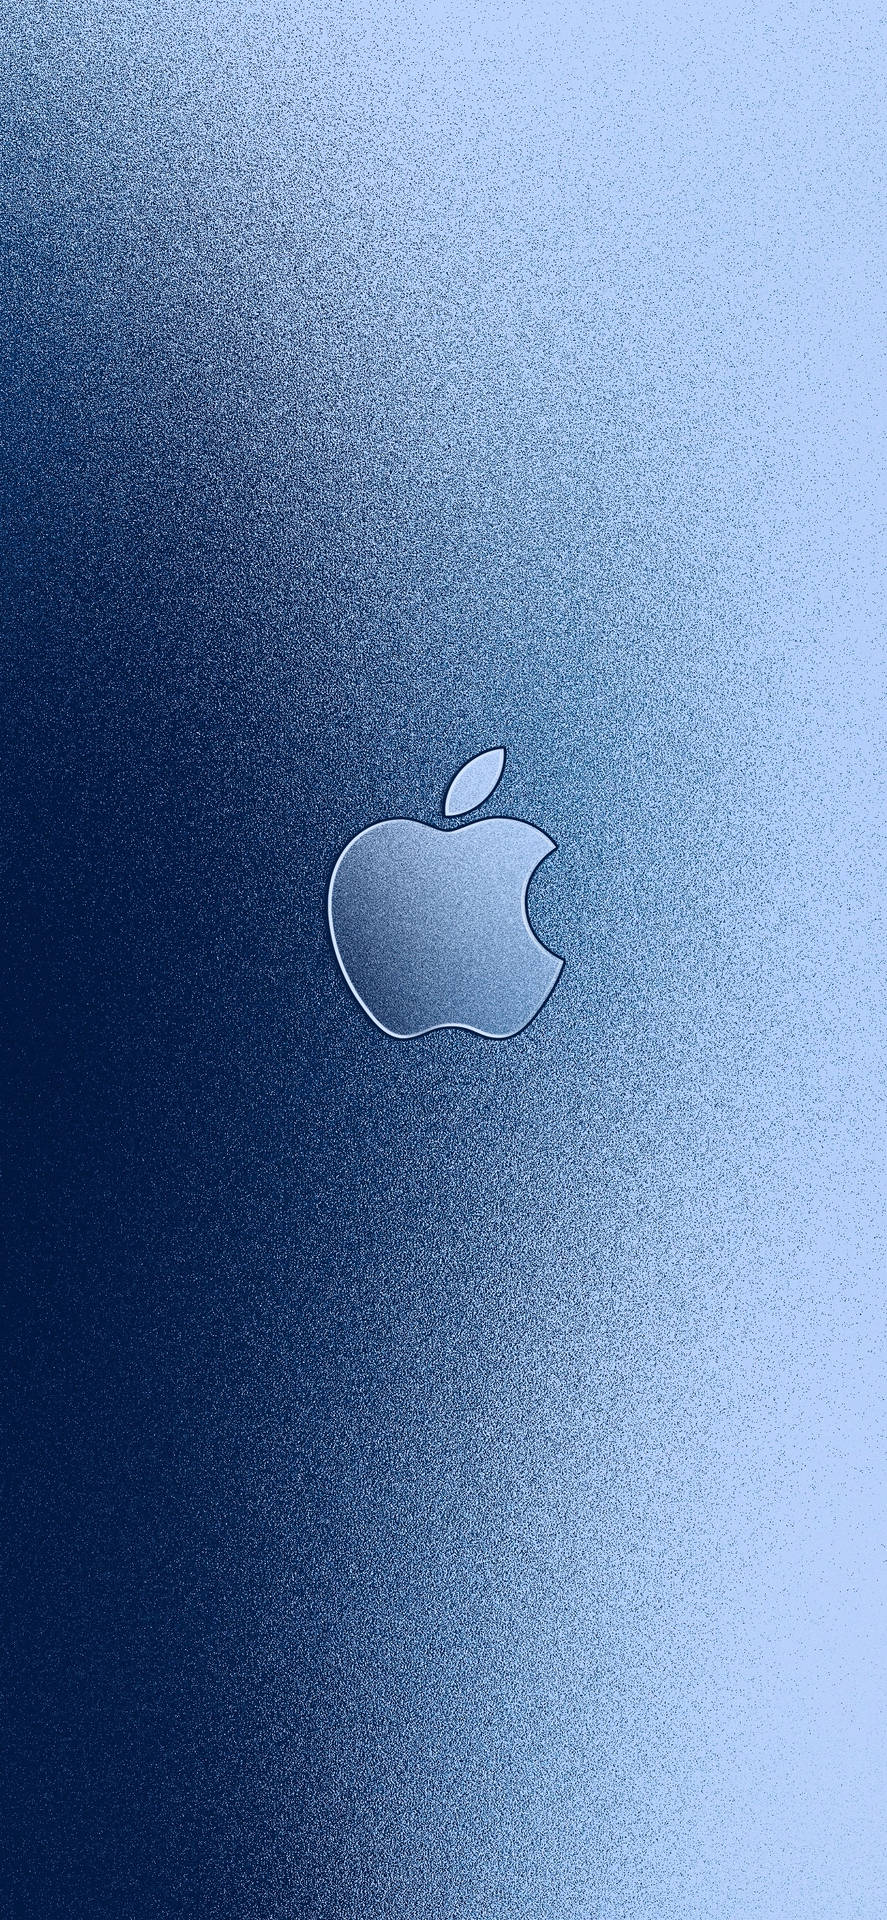 Iphonede Apple Con Degradado Azul. Fondo de pantalla